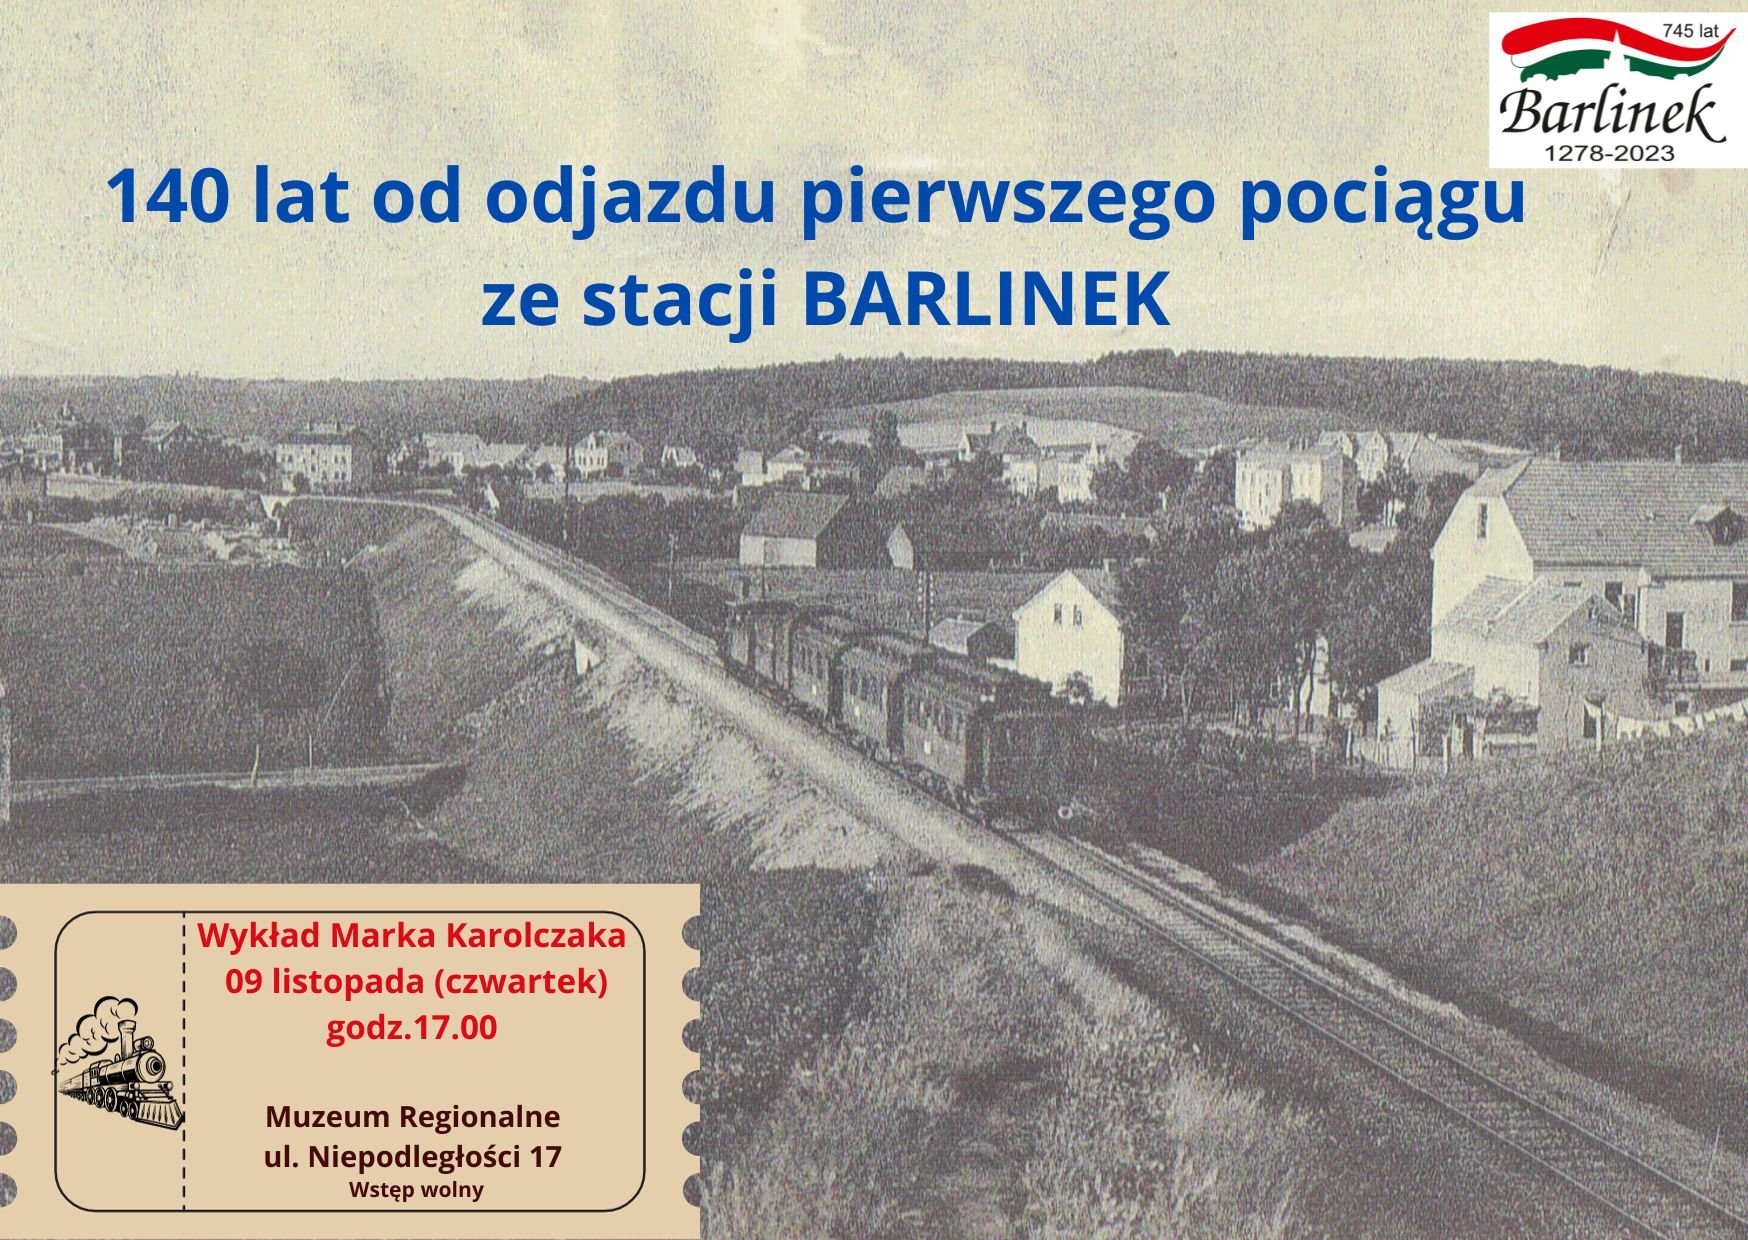 140 lat od odjazdu pierwszego pociągu ze stacji Barlinek